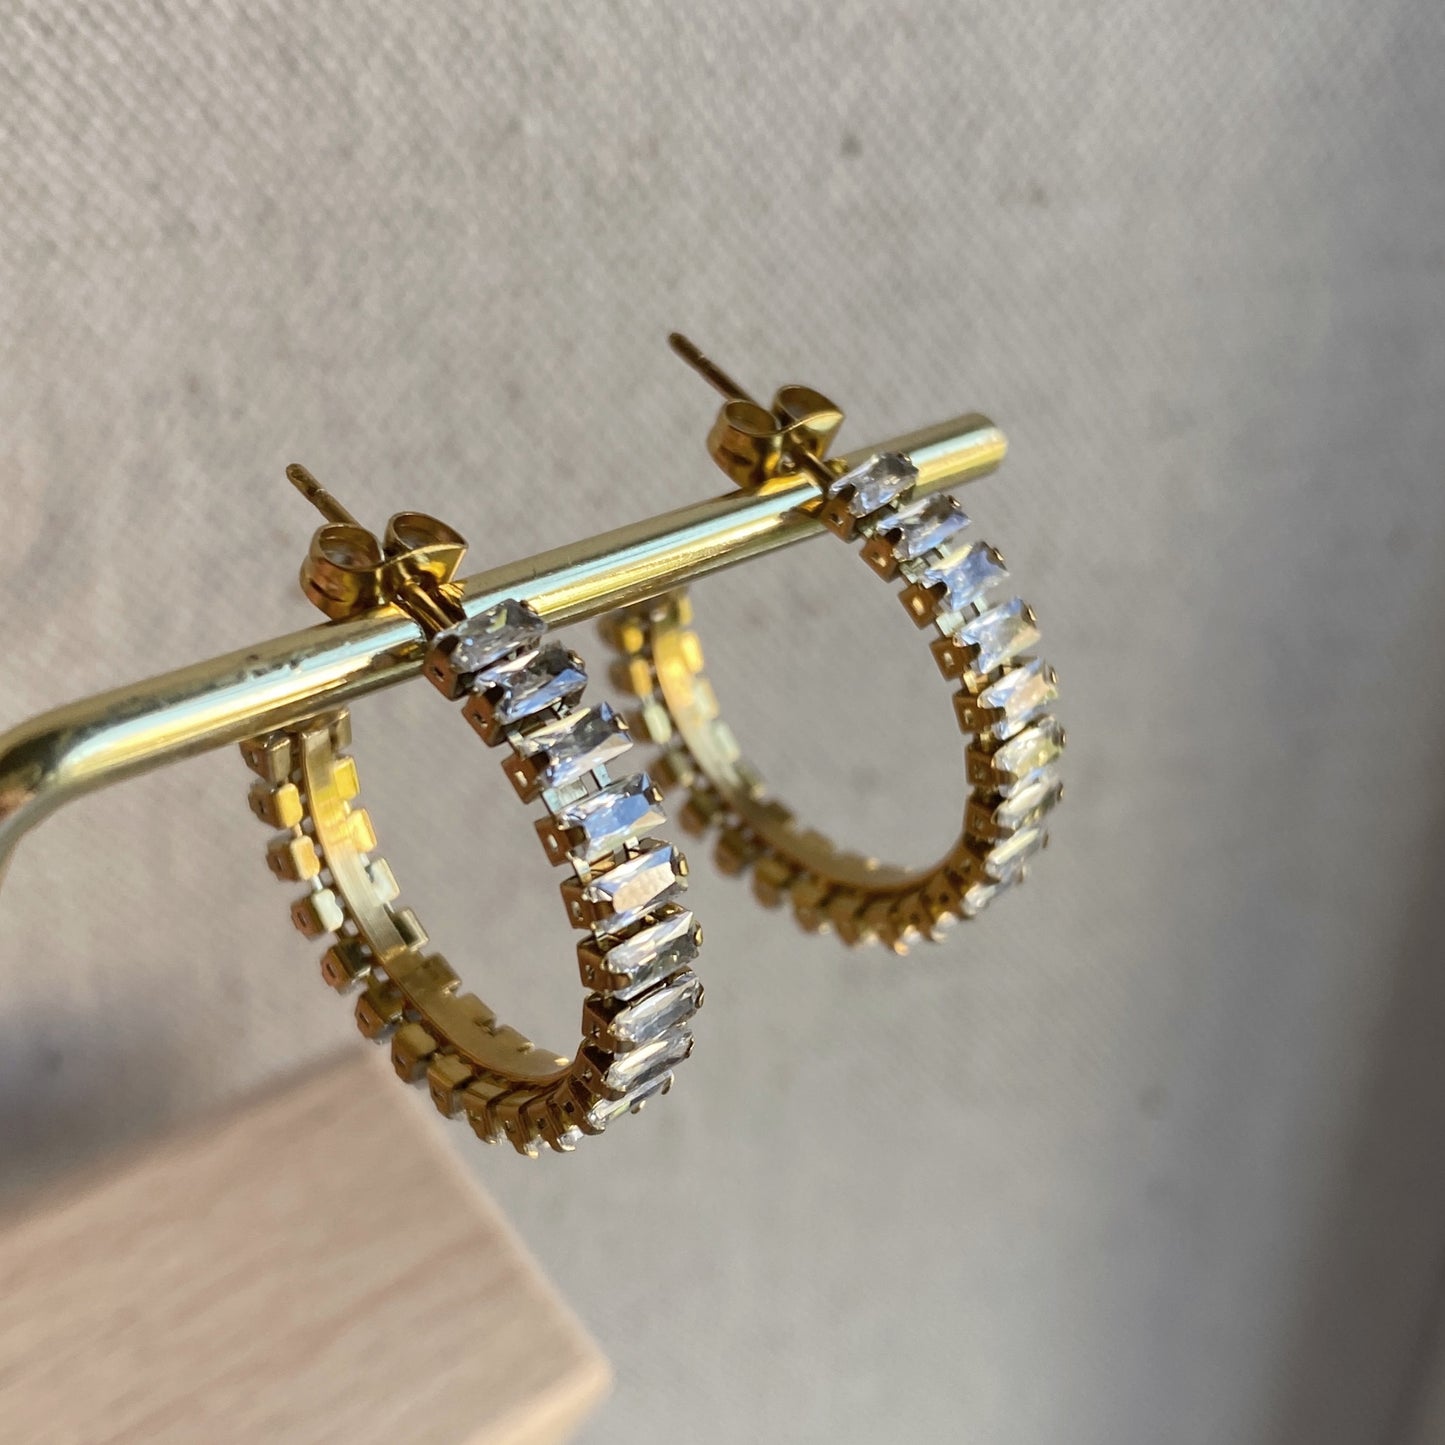 Baguette Gold Hoop Earrings Stainless Steel CZ Hoops Waterproof